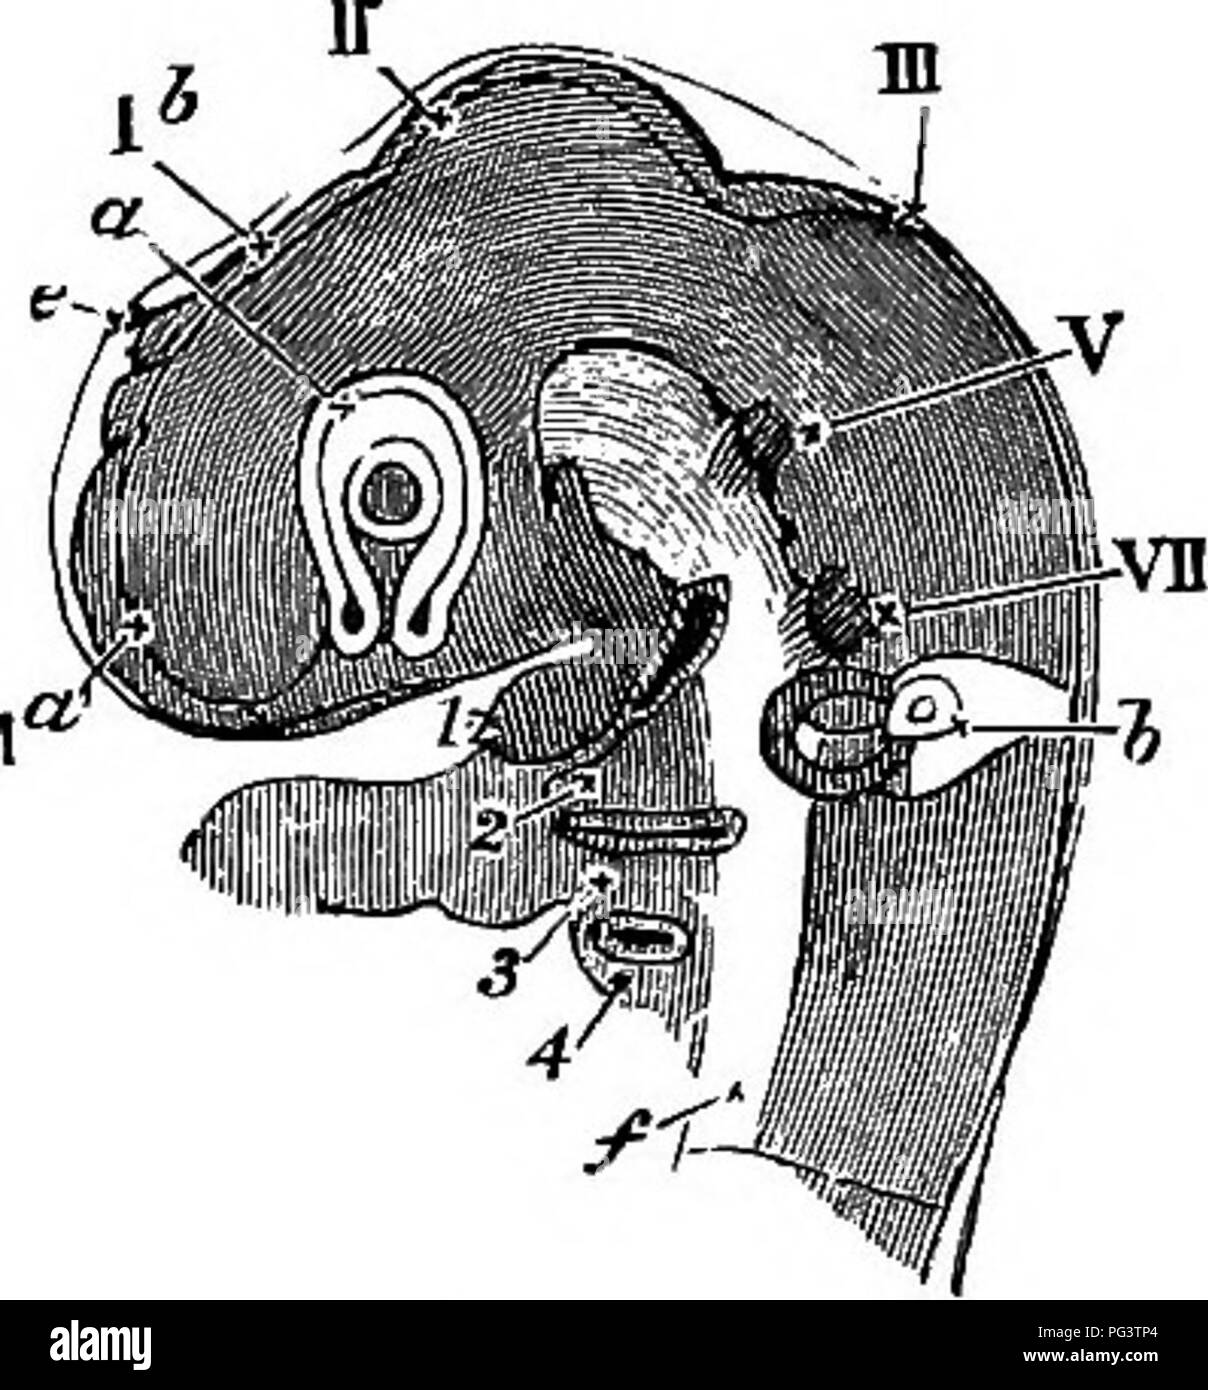 . Gli elementi di embriologia . Embriologia. 118 il terzo giorno. [CHAP. La fio. 38.. Capo di un pulcino del terzo giorno visto lateralmente come un oggetto trasparente. (Da Huxley.) Ho a. la vescicola di tlie emisfero cerebrale. 16. la vescicola del terzo ventricolo (l'originale fore-cervello); in corrispondenza del suo vertice è visto la proiezione della ghiandola pineale e. Al di sotto di questa parte del cervello è visto in sezione ottica, la vescicola ottica un involuted già con la sua folta interno ed esterno più sottile parete (la lettera a è collocato sulla giunzione tra i due, la cavità primaria essendo quasi obhterated). Nel centro del Foto Stock